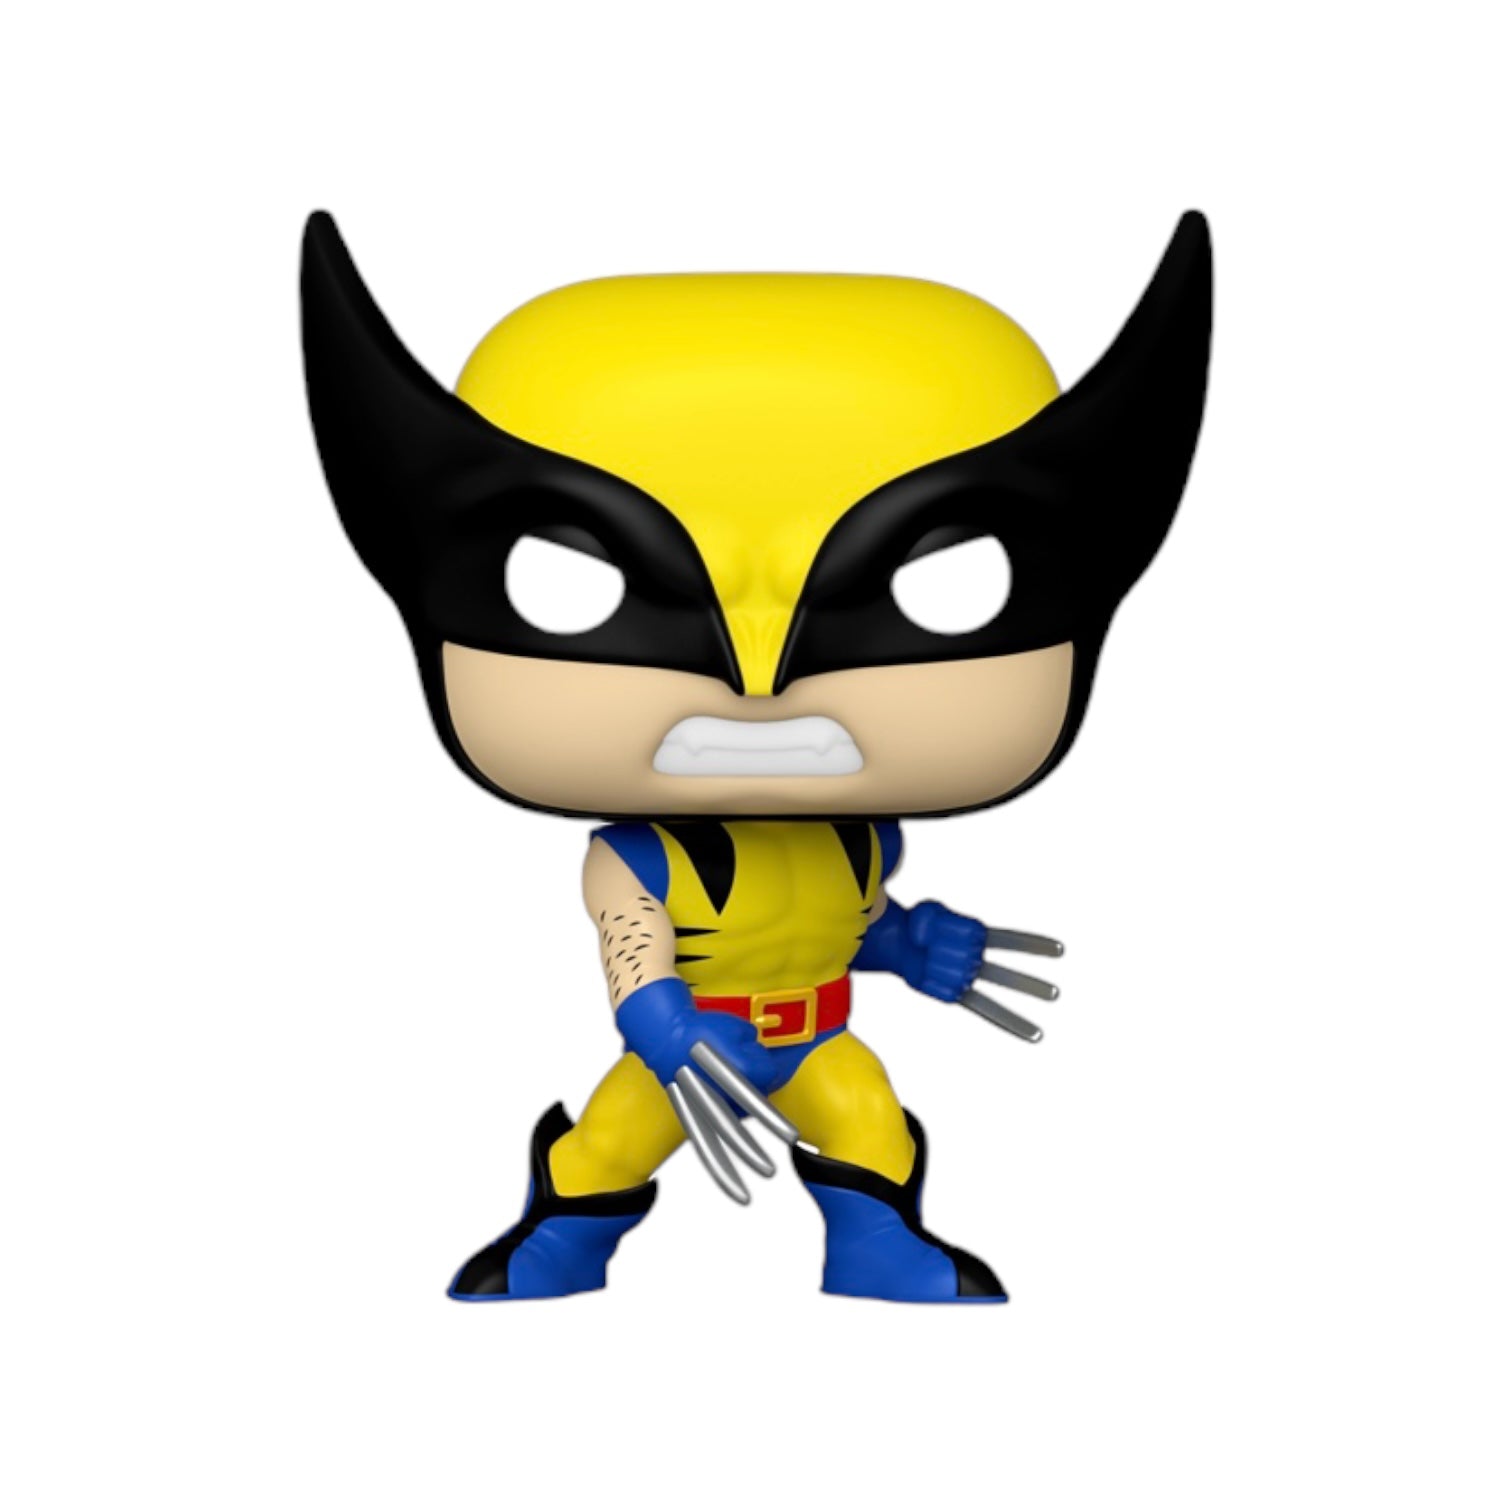 Wolverine #1371 Funko Pop! Wolverine 50th - PREORDER